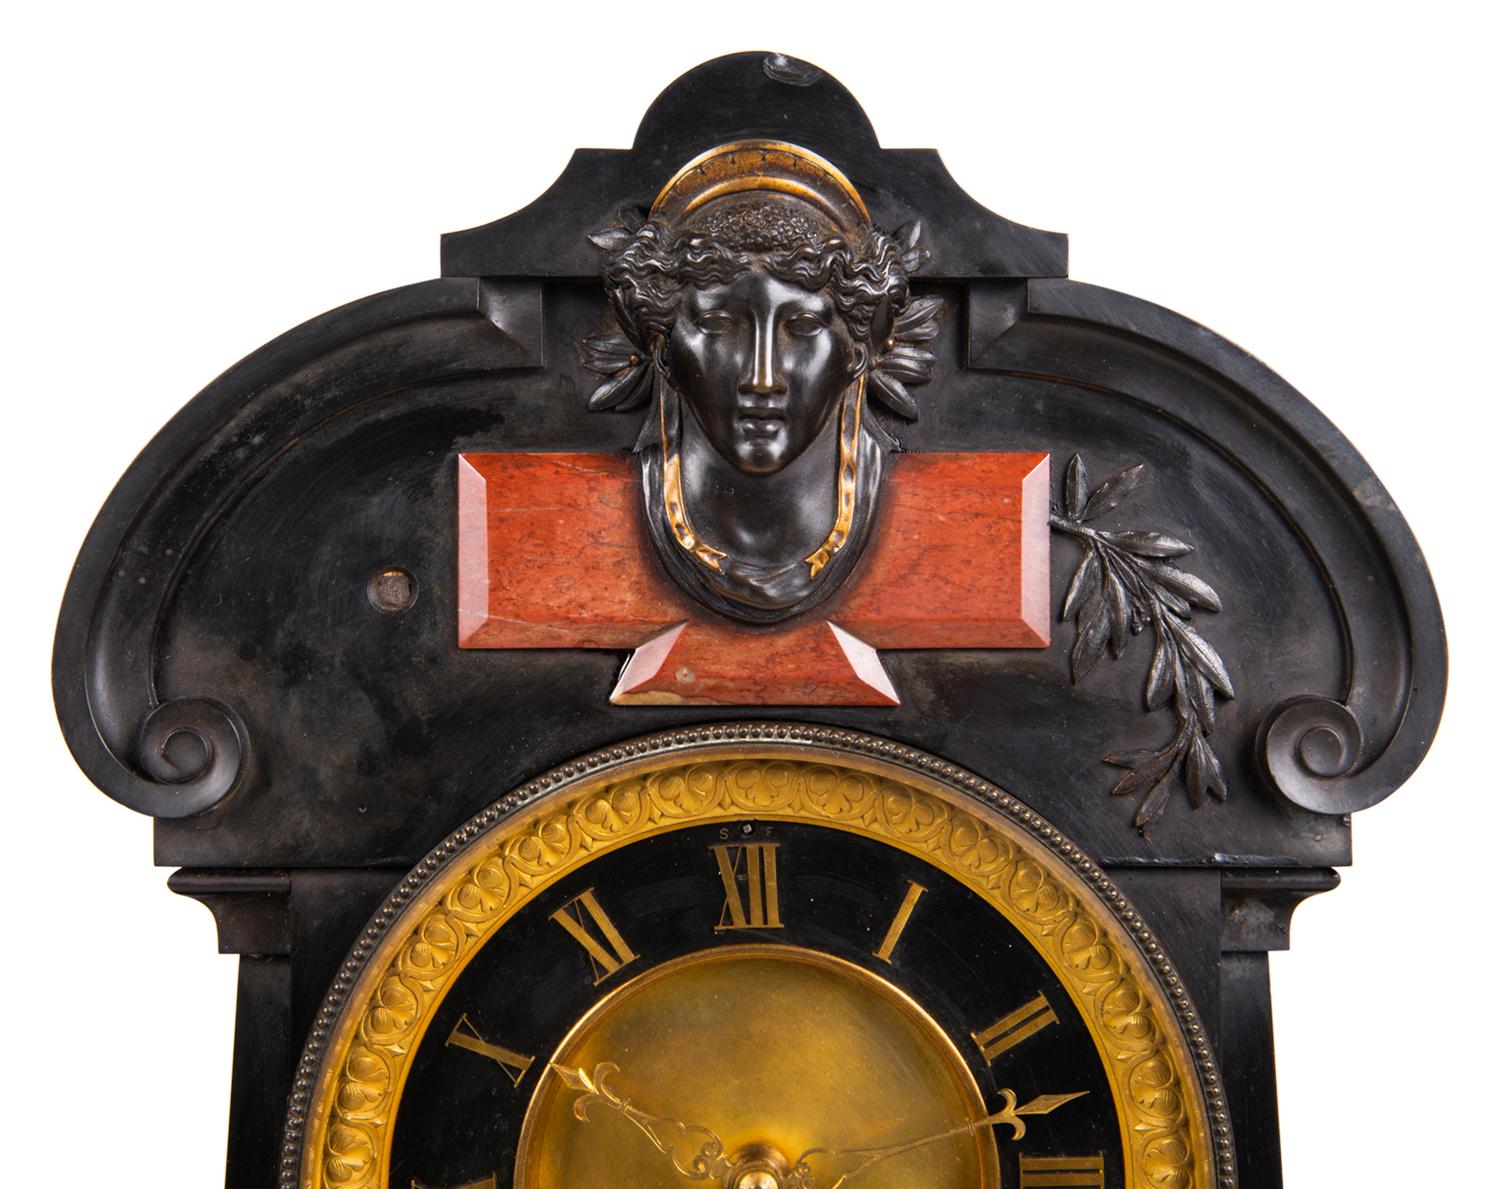 Eine sehr beeindruckende Kaminsimsuhr aus schwarzem belgischem Marmor aus dem 19. Jahrhundert mit einer Uhr, einem Barometer und einem Mondphasenkalender, mit klassischem Rollendekor auf dem Marmorgehäuse, mit eingelassenen rougefarbenen